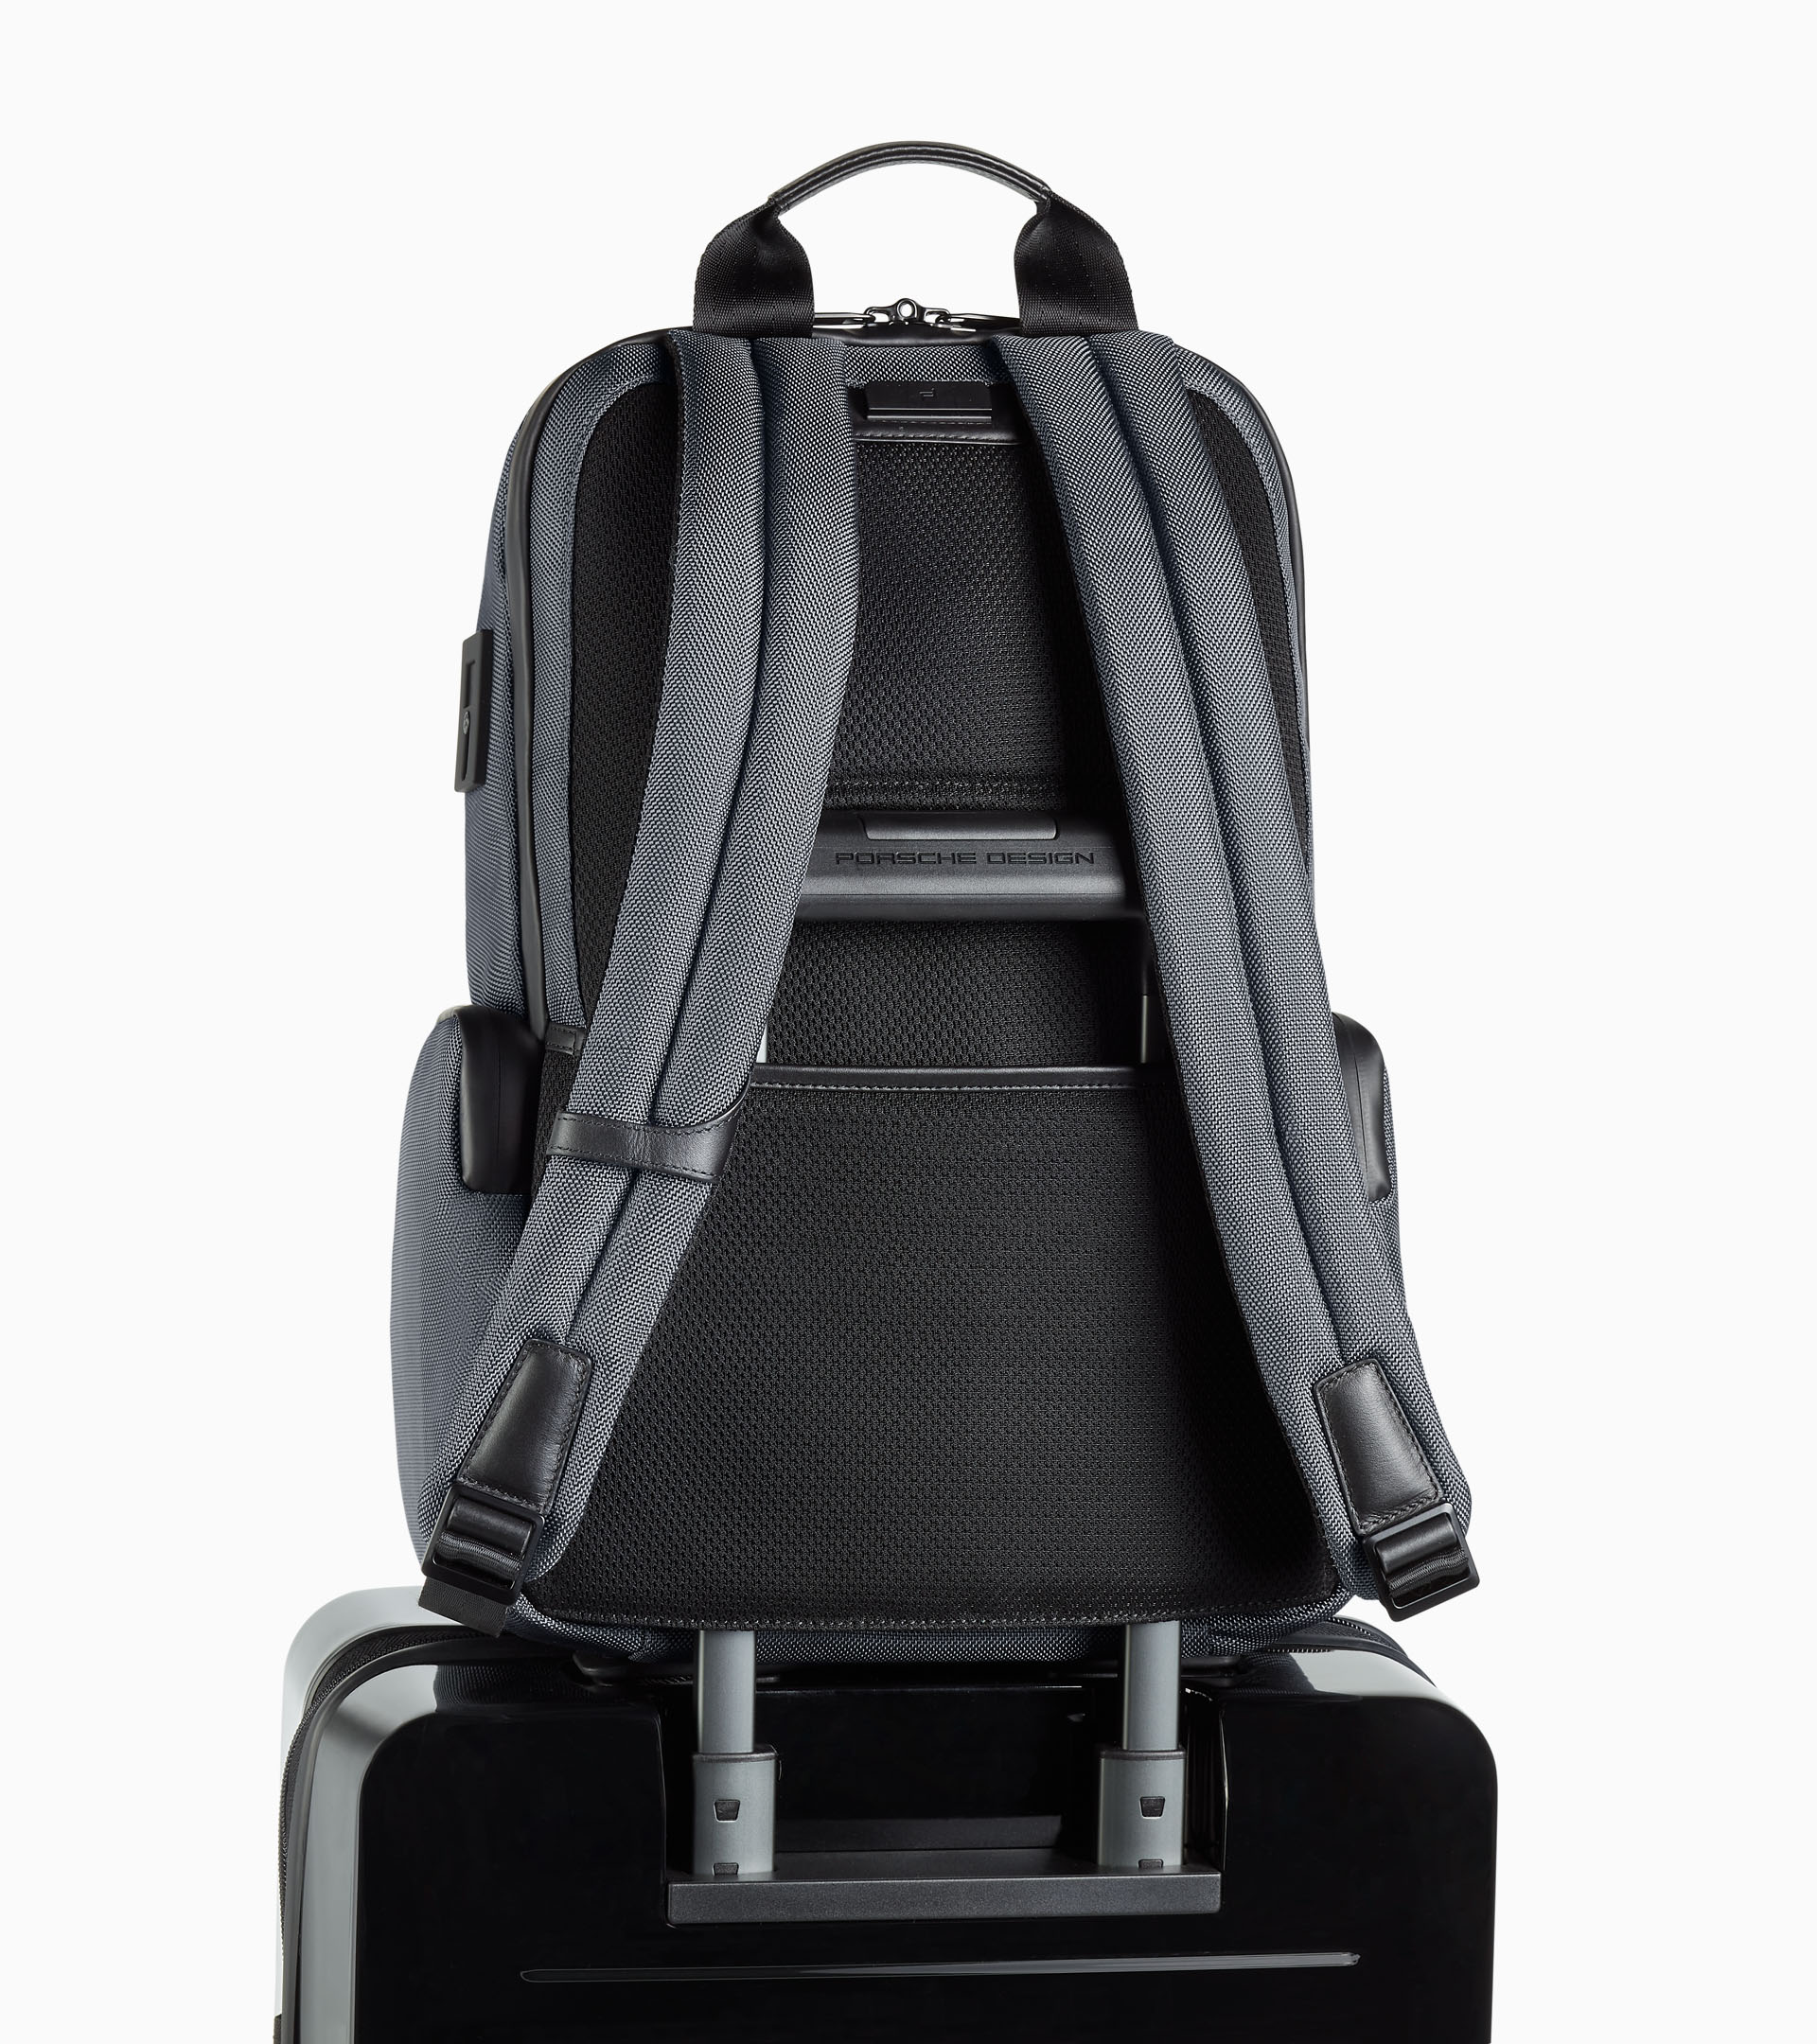 Roadster Pro Backpack M1 - Business Backpack for Men | Porsche Design ...